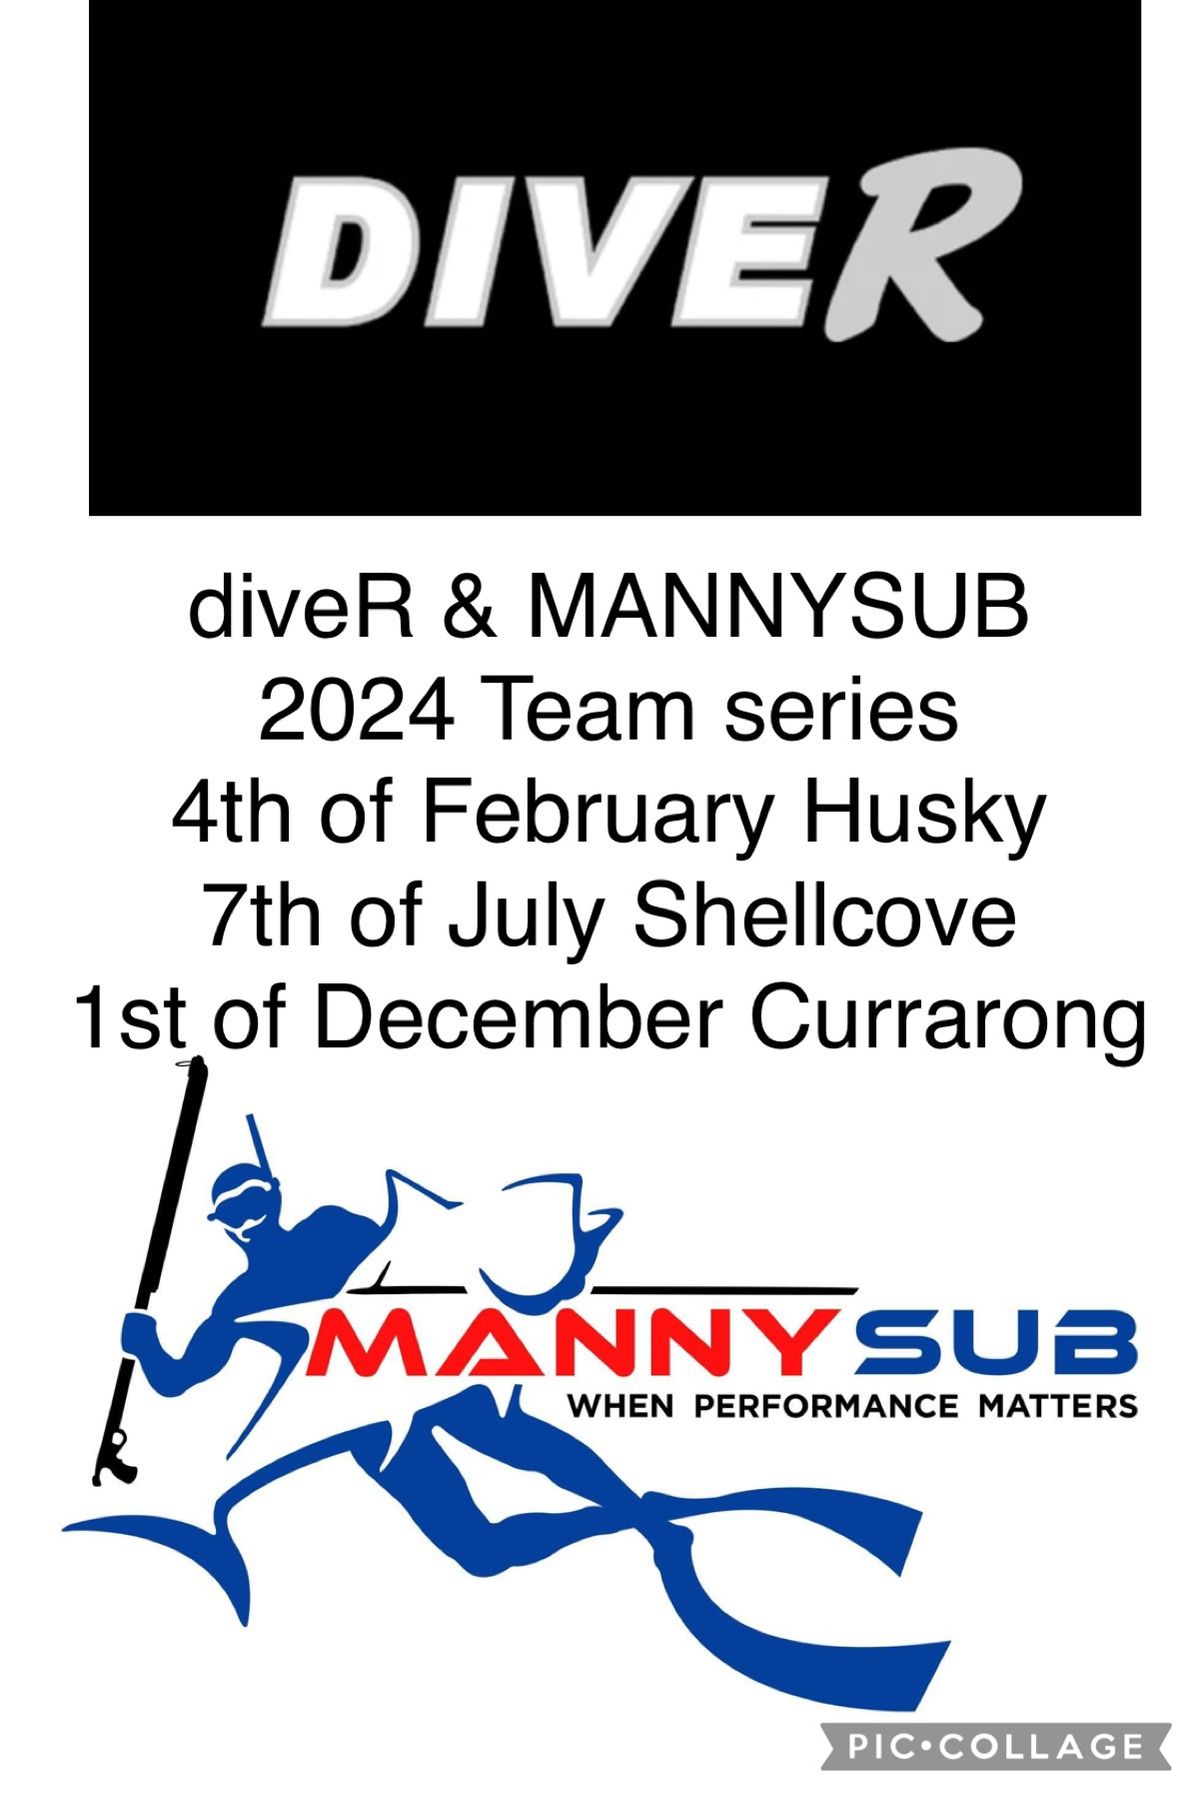 DiveR & mannysub team series 2